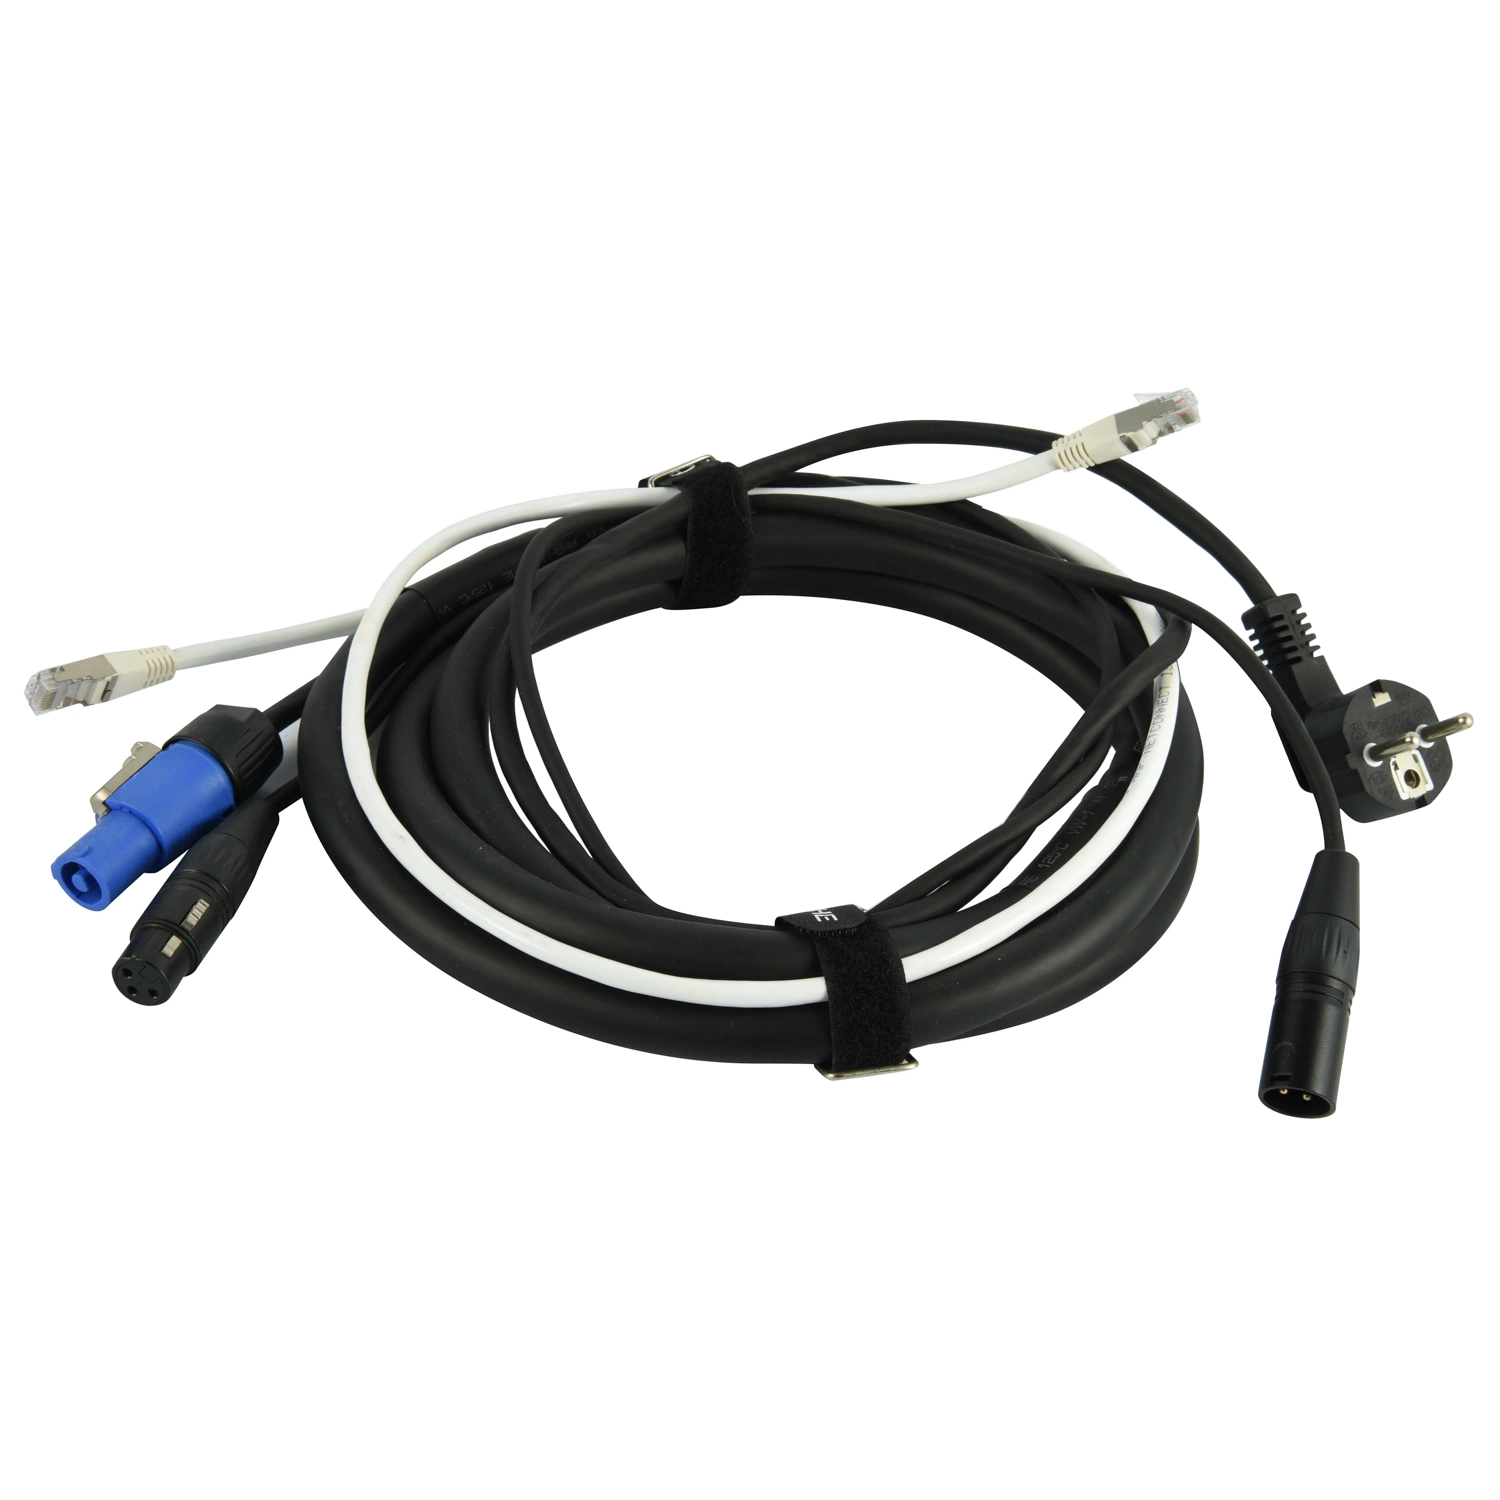 Cable de cable de altavoz Speakon para cables Speakon profesionales, de trocha 12 AWG Cable de Audio DJ Speaker Cable con corriente/bloqueo de torsión - 2 Conducto076